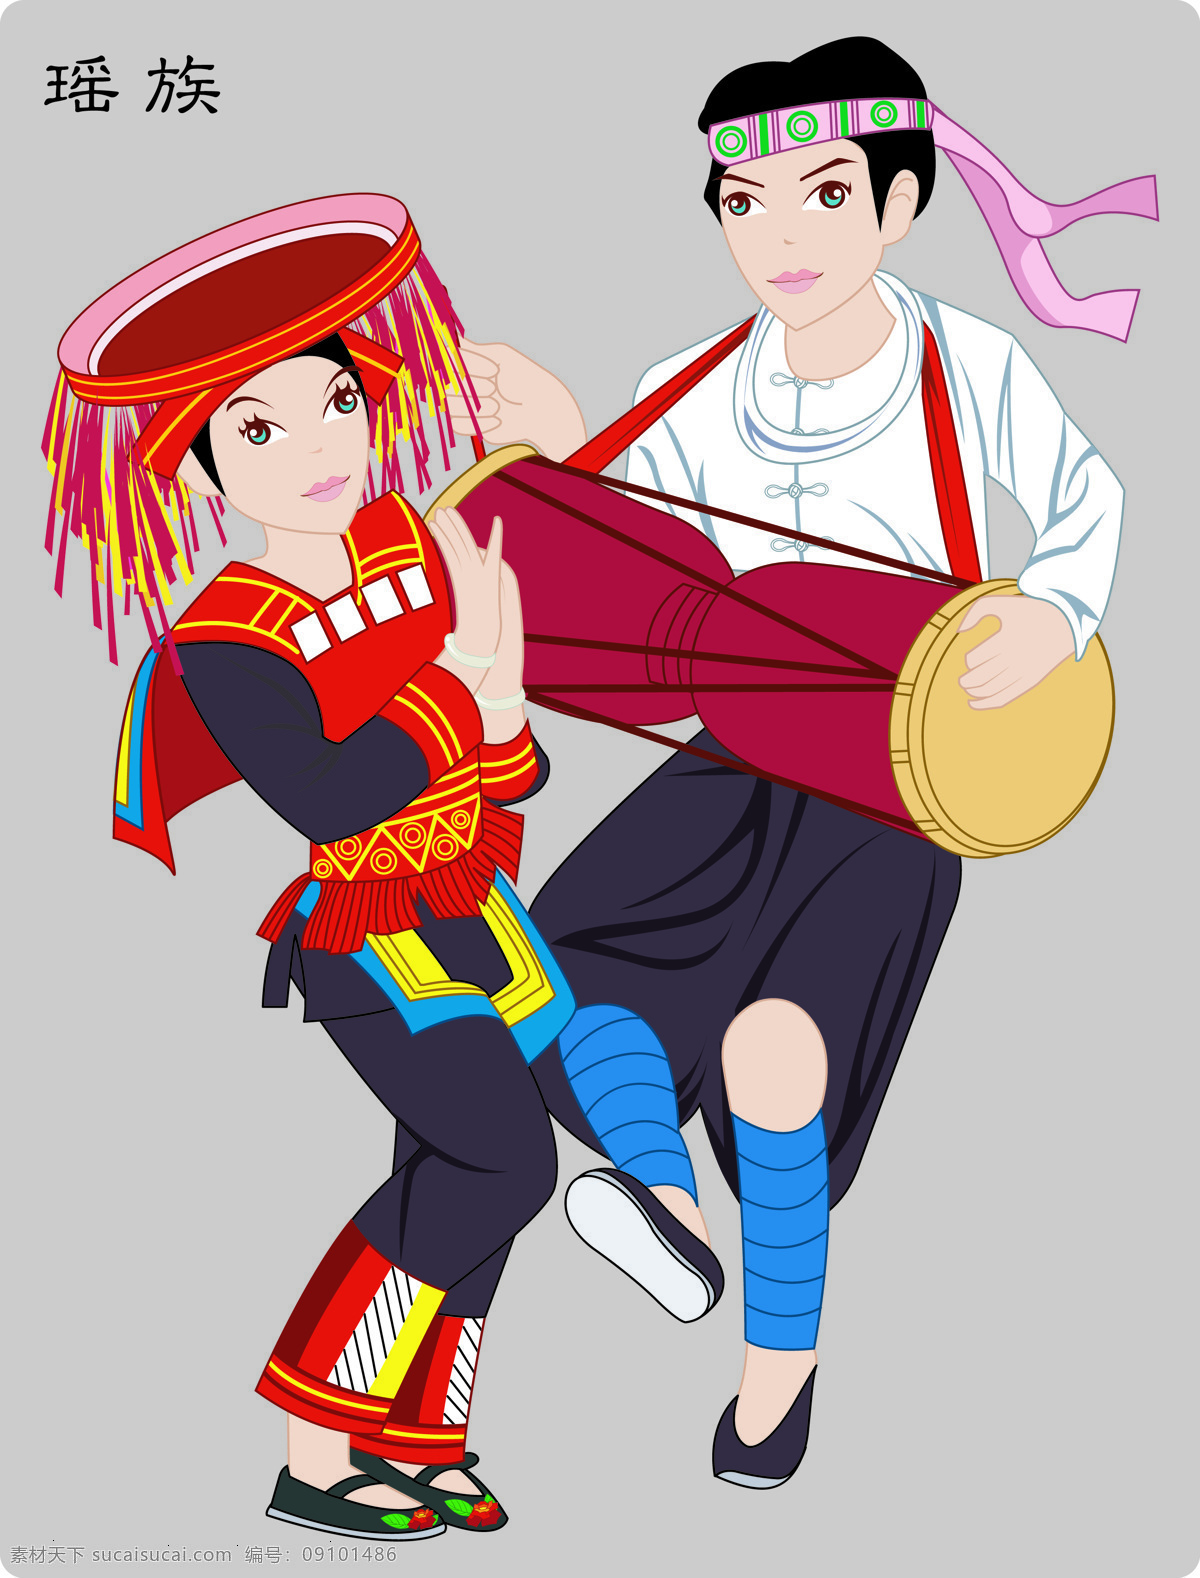 少数民族瑶族 瑶族 少数民族 民族文化 民族 56个民族 文化艺术 传统文化